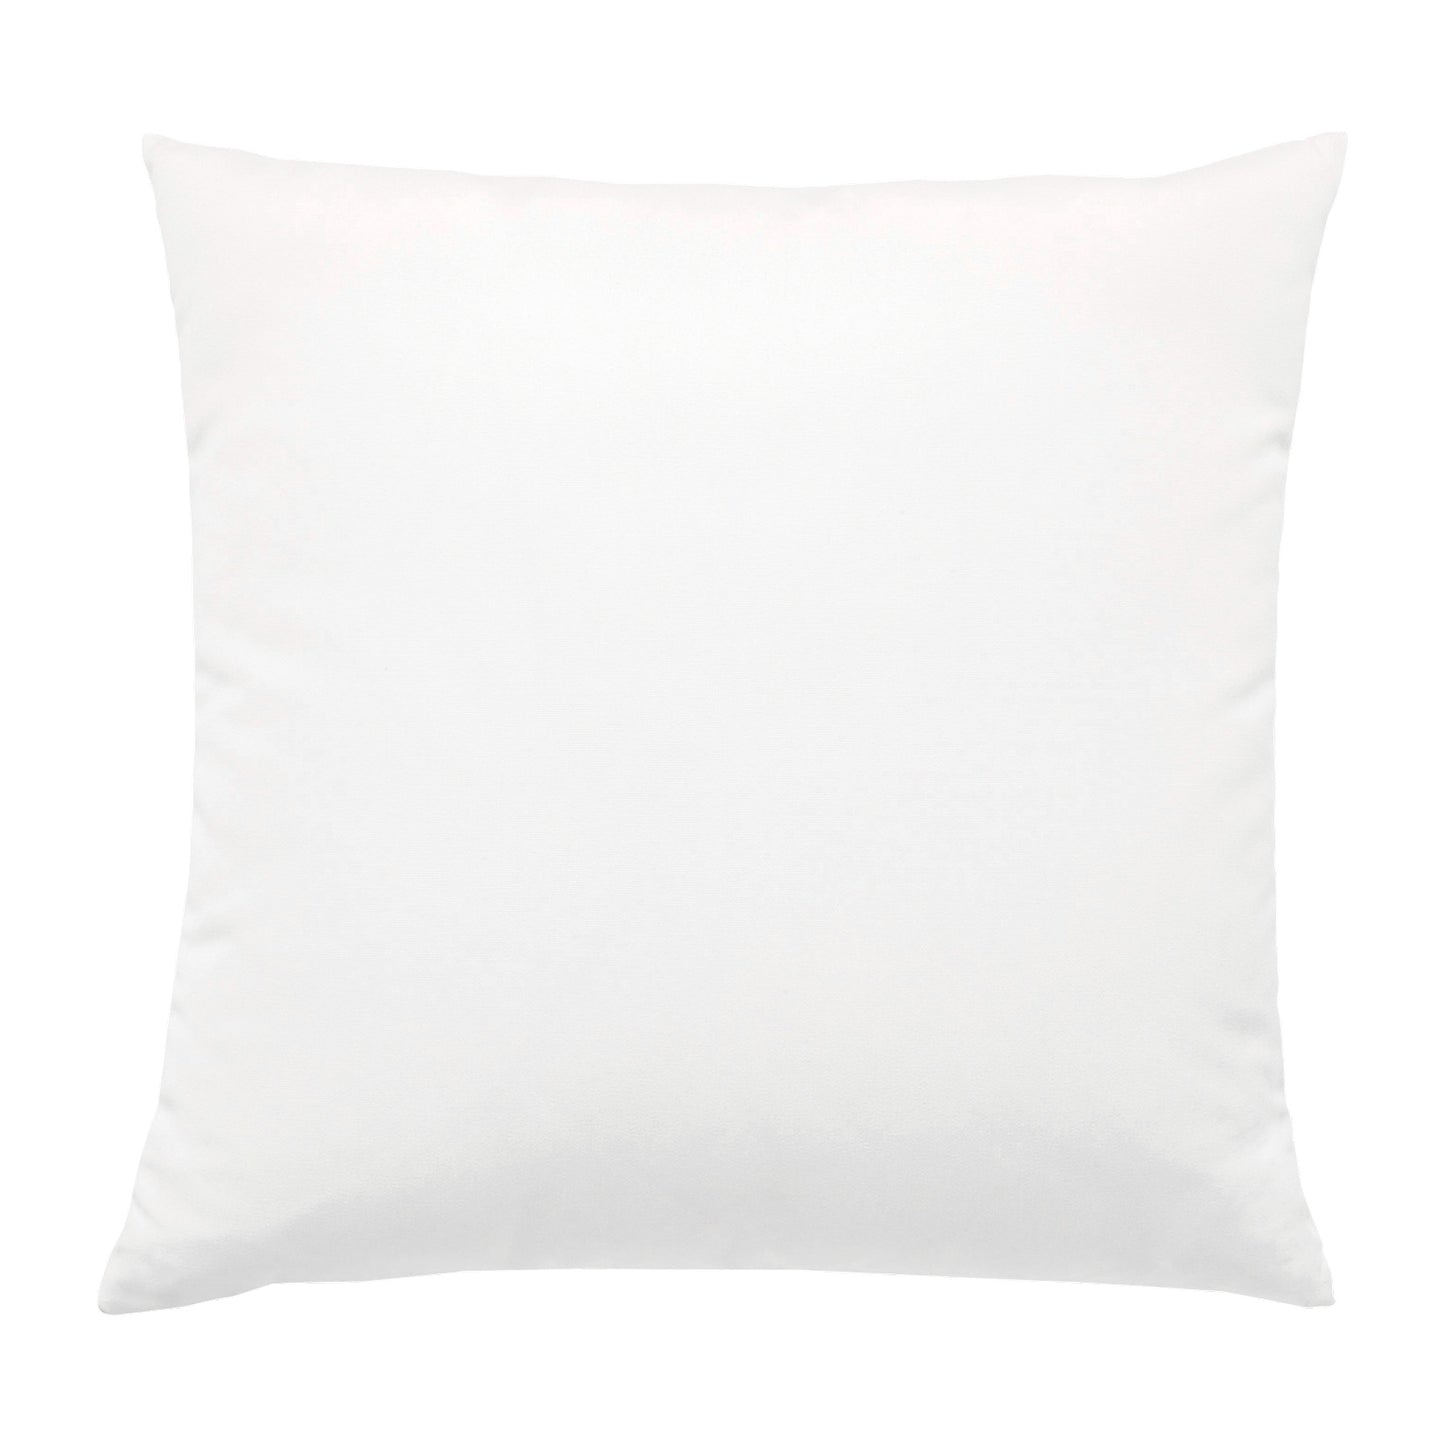 20" Square Elaine Smith Pillow  Canvas White